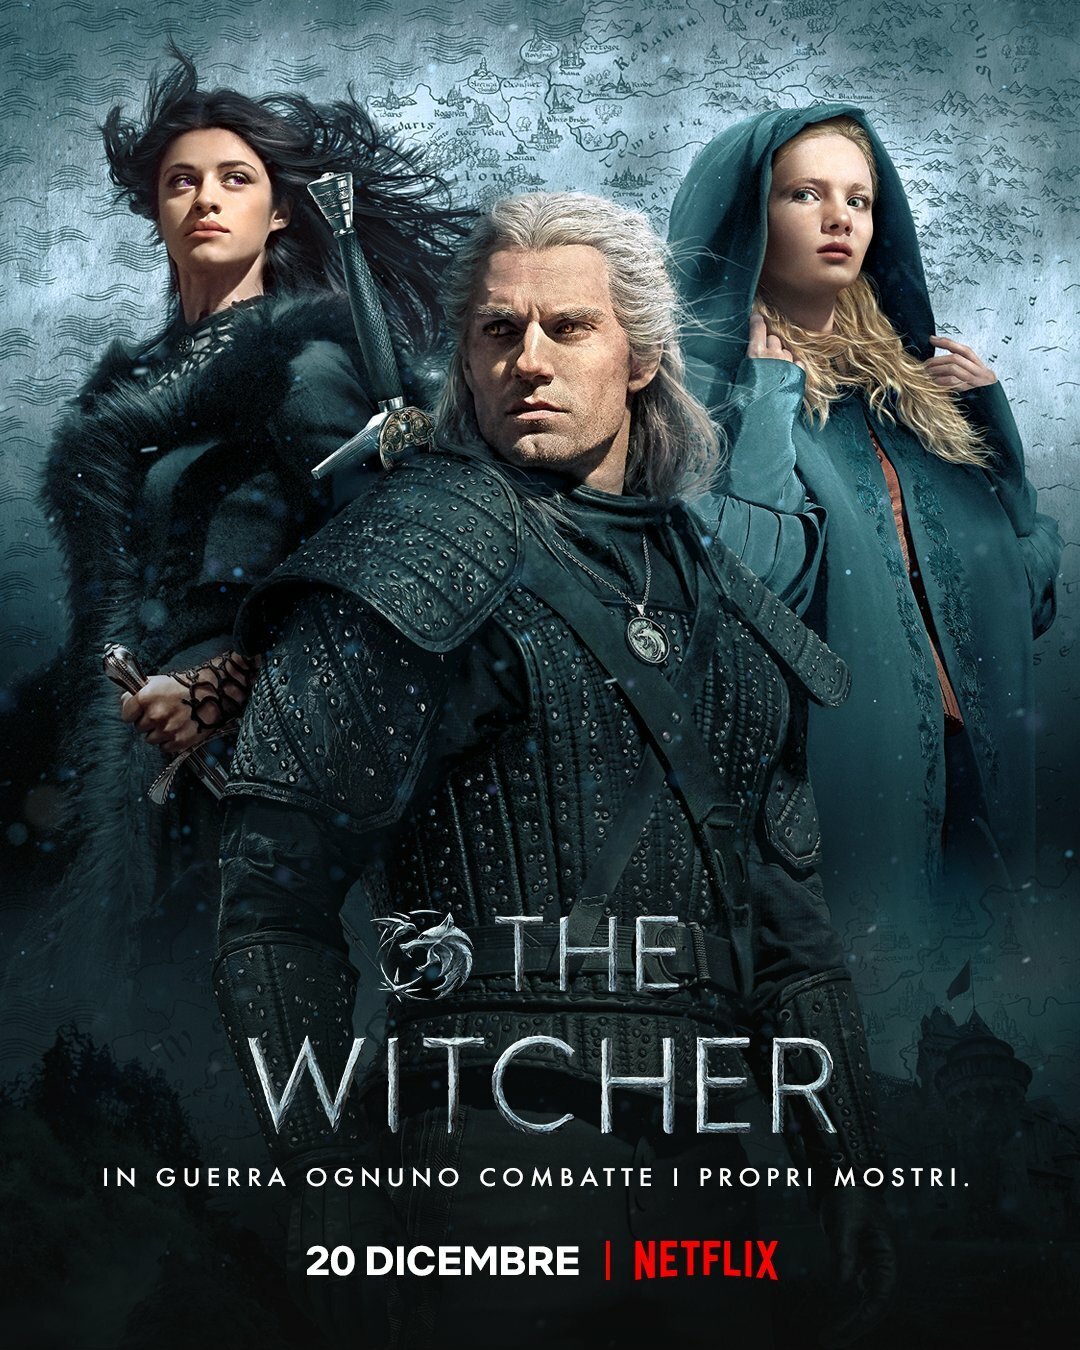 Geralt, Yenneger e Ciri sulla locandina italiana di The Witcher